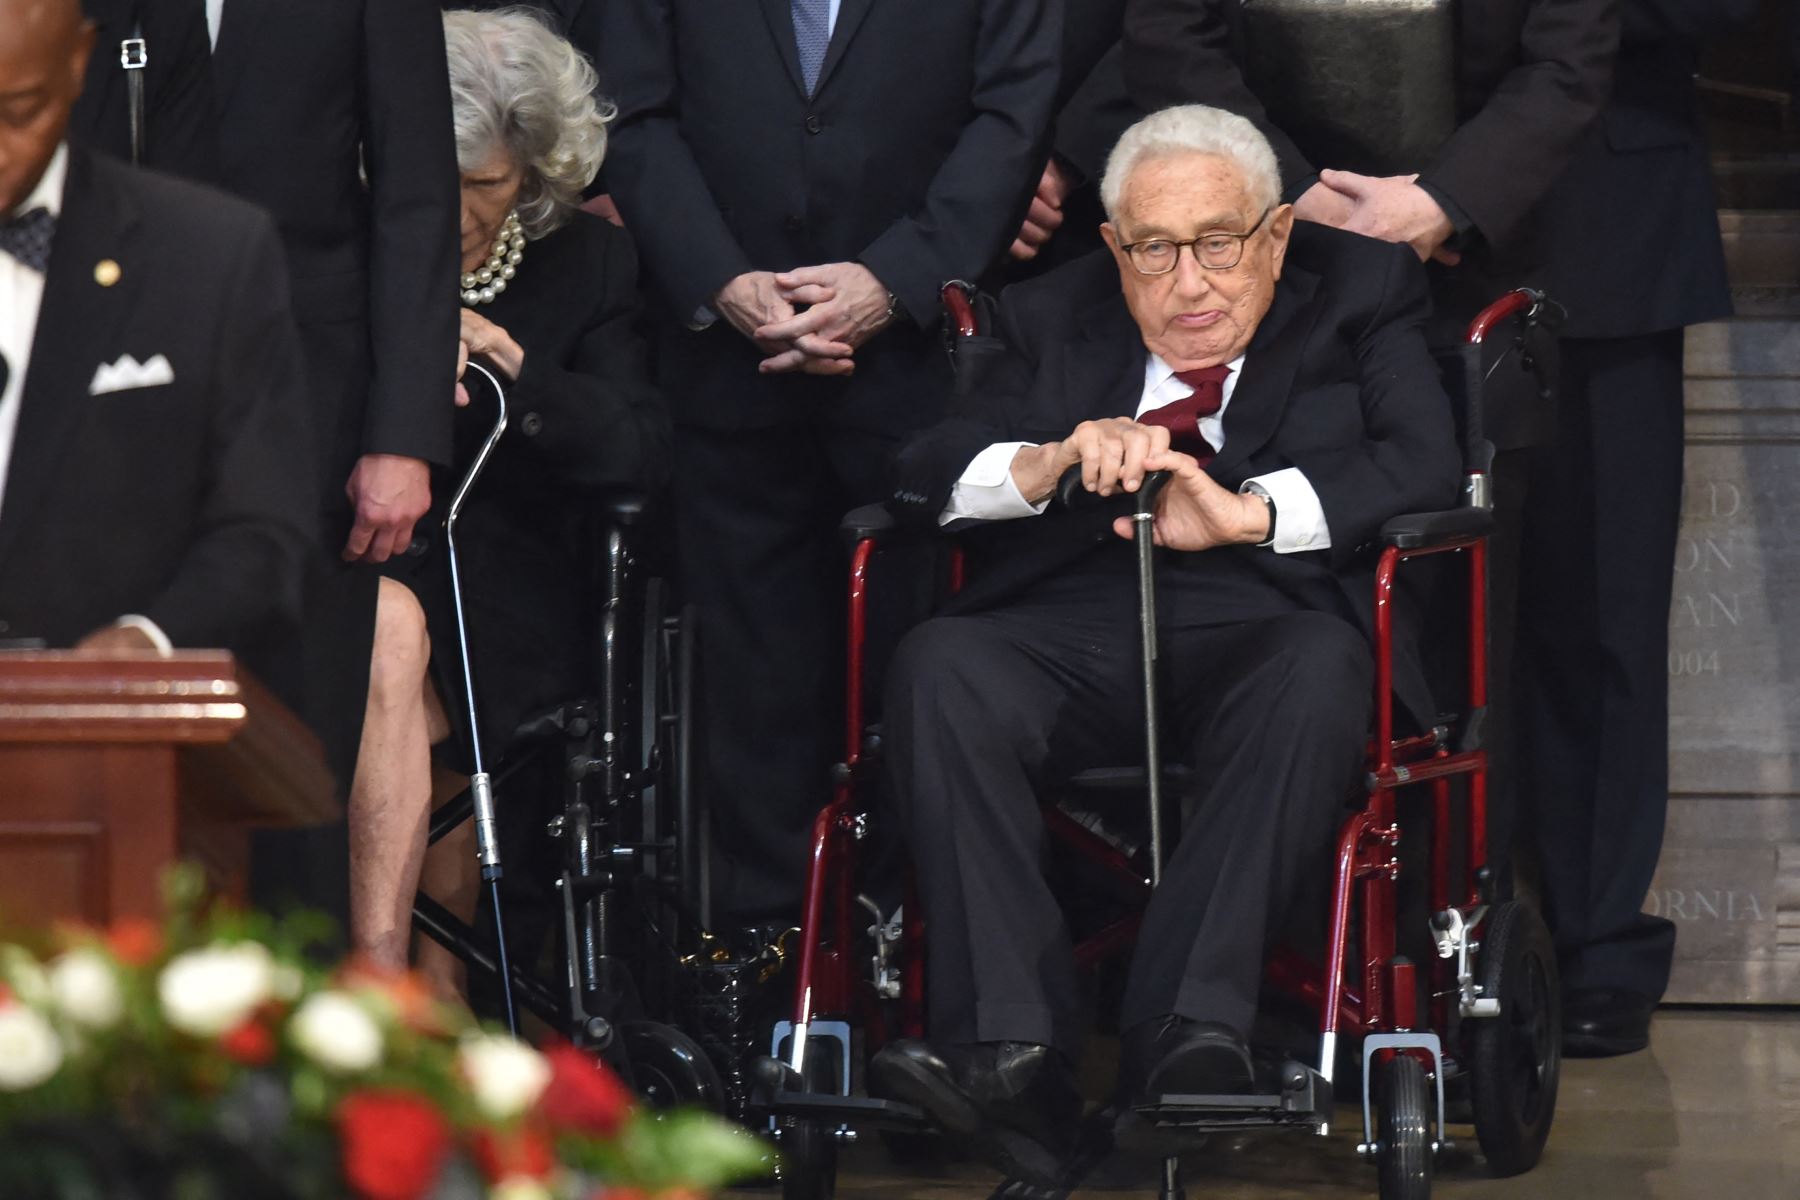 El exsecretario de Estado de los Estados Unidos, Henry Kissinger, presenta sus respetos durante las ceremonias en honor al fallecido senador estadounidense John McCain en la Rotonda del Capitolio de los Estados Unidos en Washington, DC, el 31 de agosto de 2018.
Foto: AFP